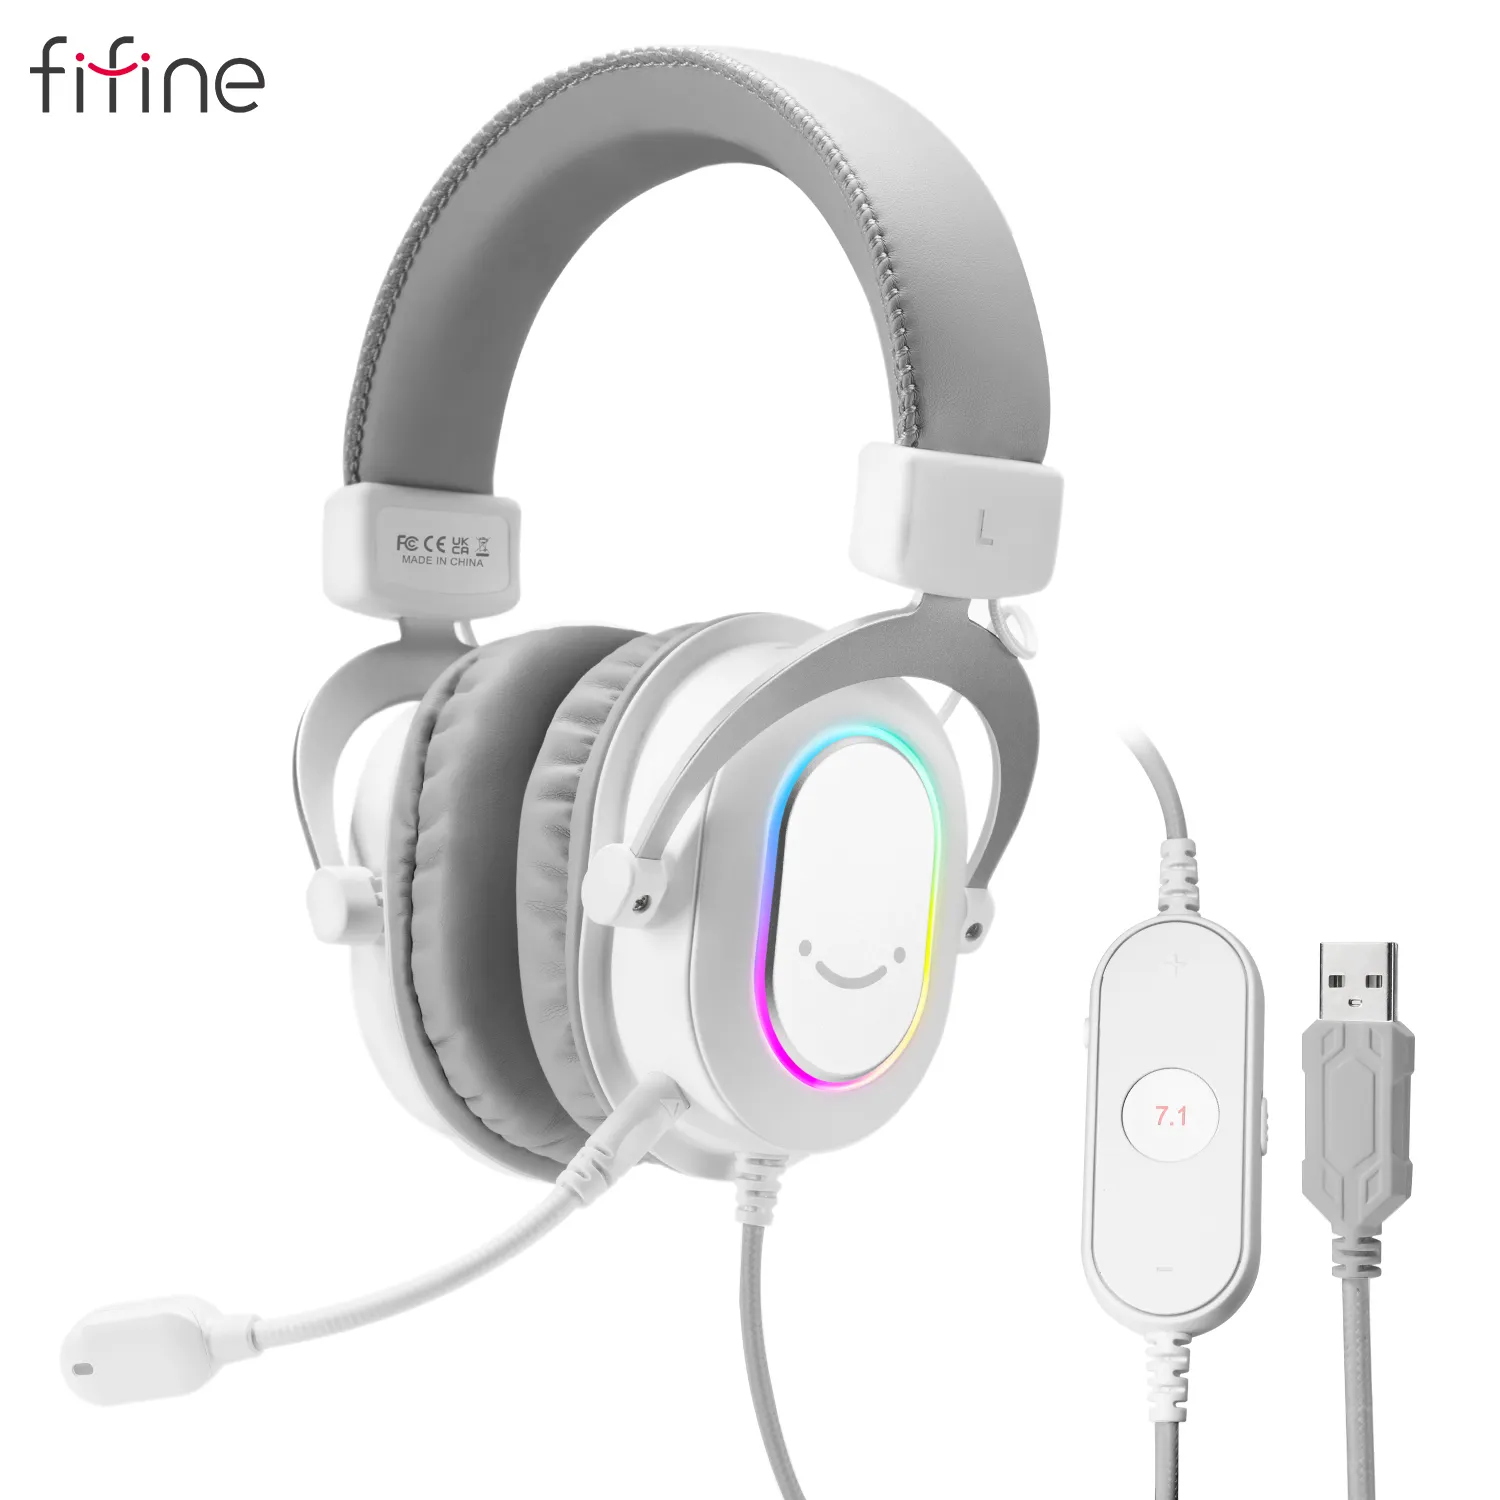 Fifine หูฟังอินเอียร์และครอบหูสำหรับเล่นเกม RGB ช่อง7.1ตัดเสียงรบกวนชุดหูฟัง USB แบบมีสาย3.5มม. พร้อมไมโครโฟน